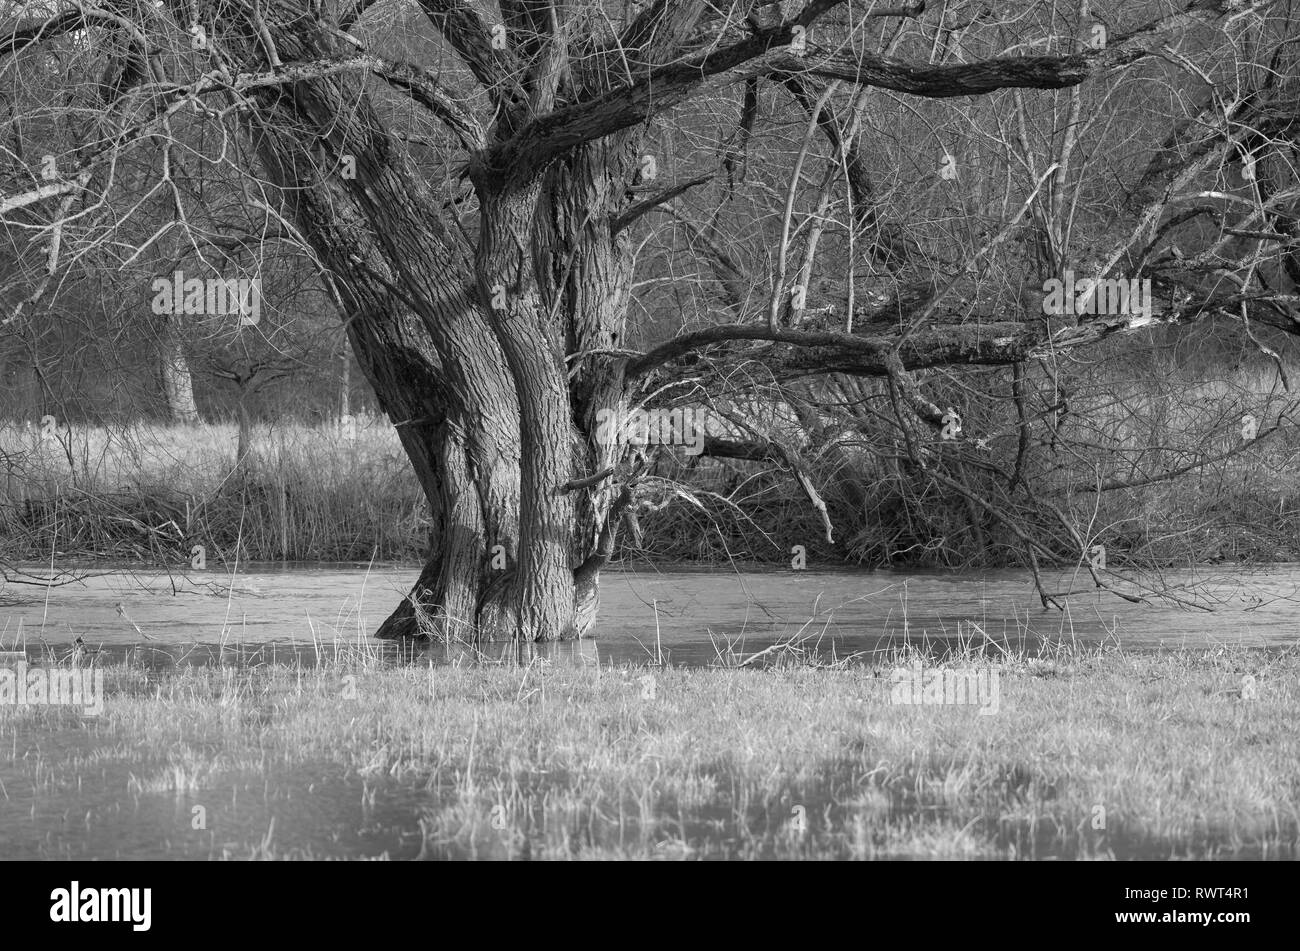 Überschwemmung - Bäume am Flussufer der Lahn Stock Photo